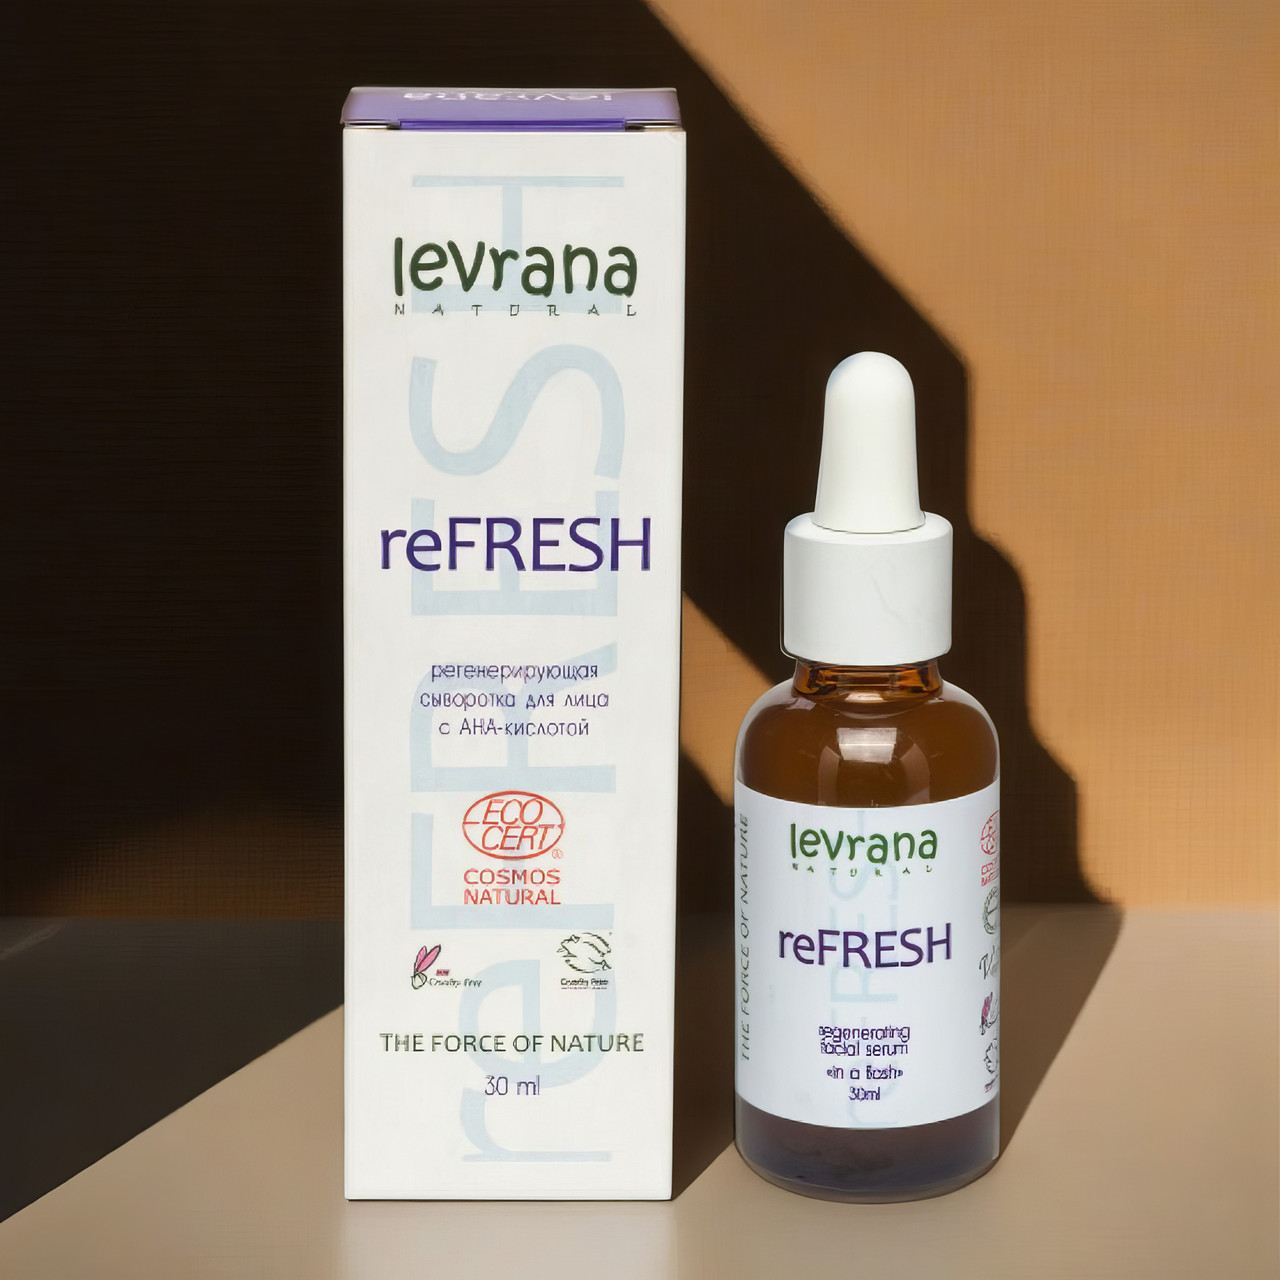 Сыворотка для лица Levrana "reFresh" регенерирующая,обновление кожных клеток, 30мл